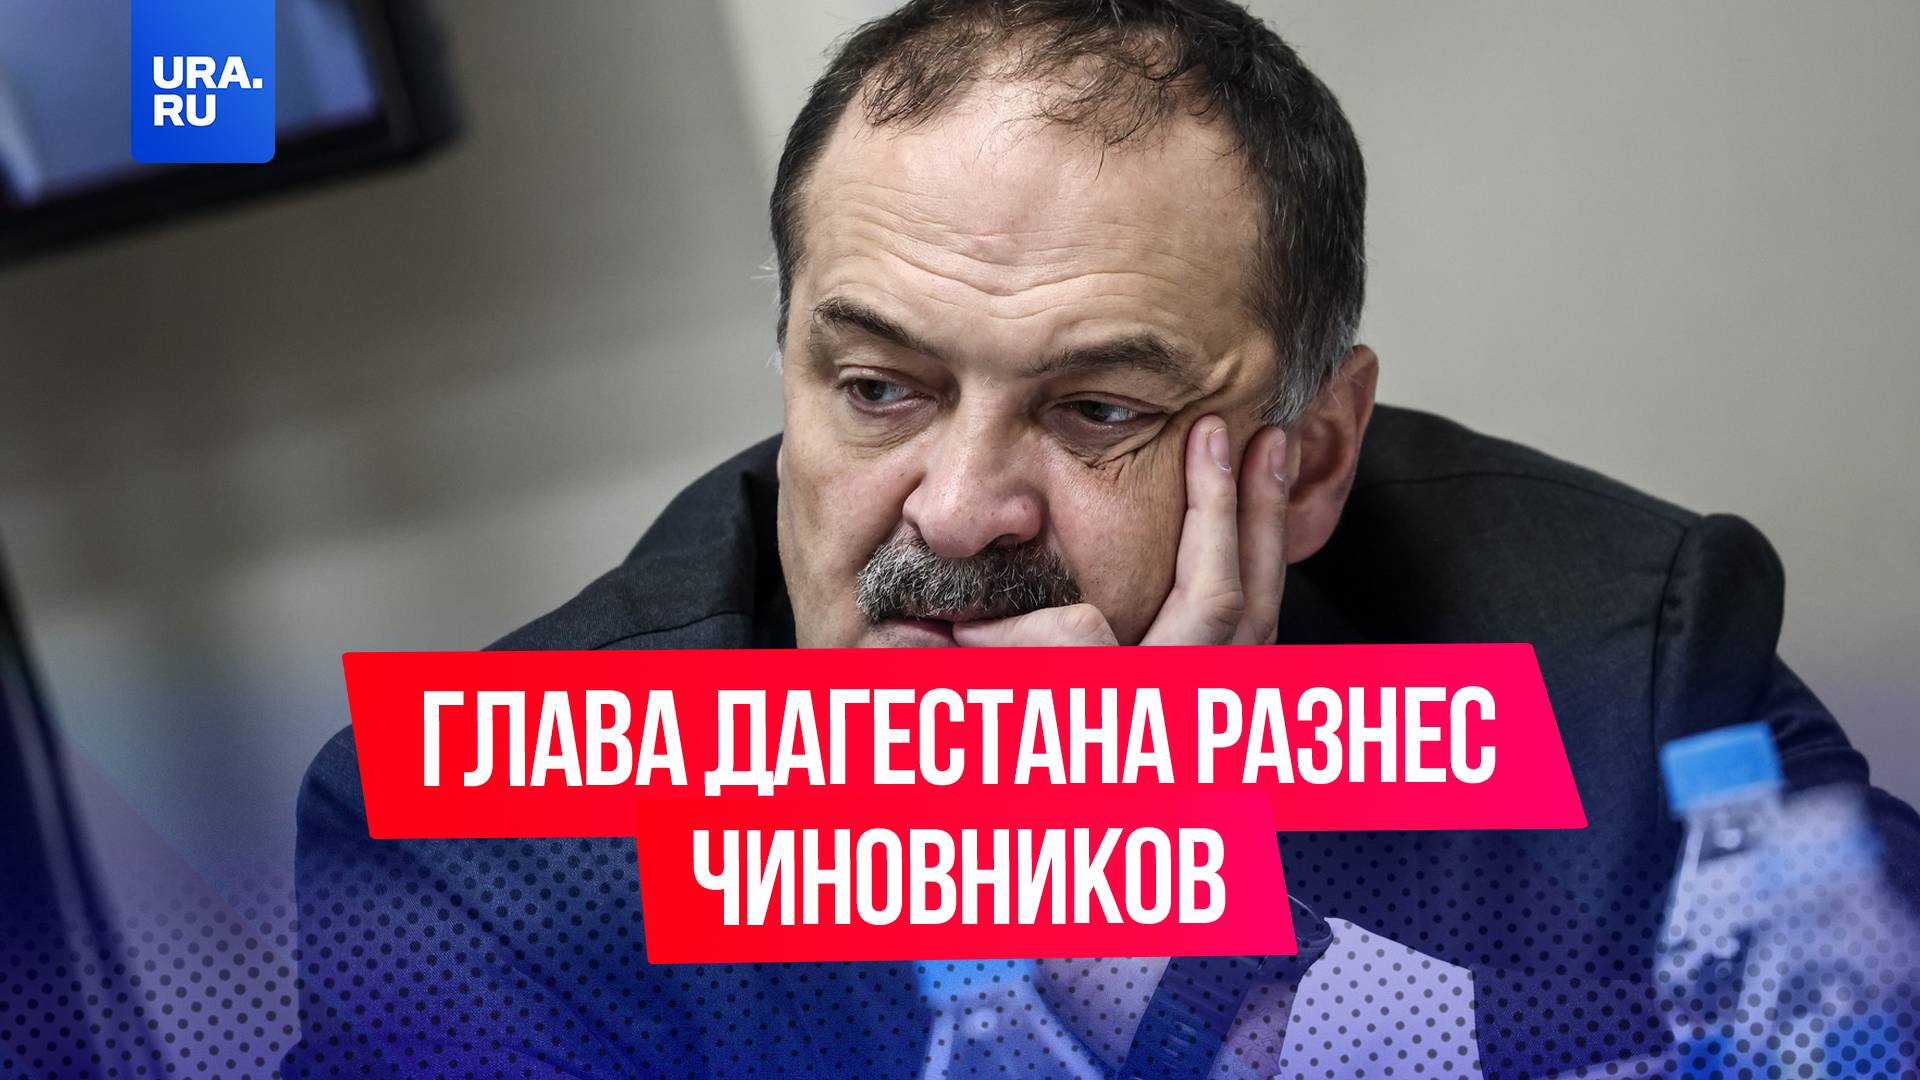 «После того, как клюнули в задницу, да?»: глава Дагестана в пух и в прах разносит чиновников